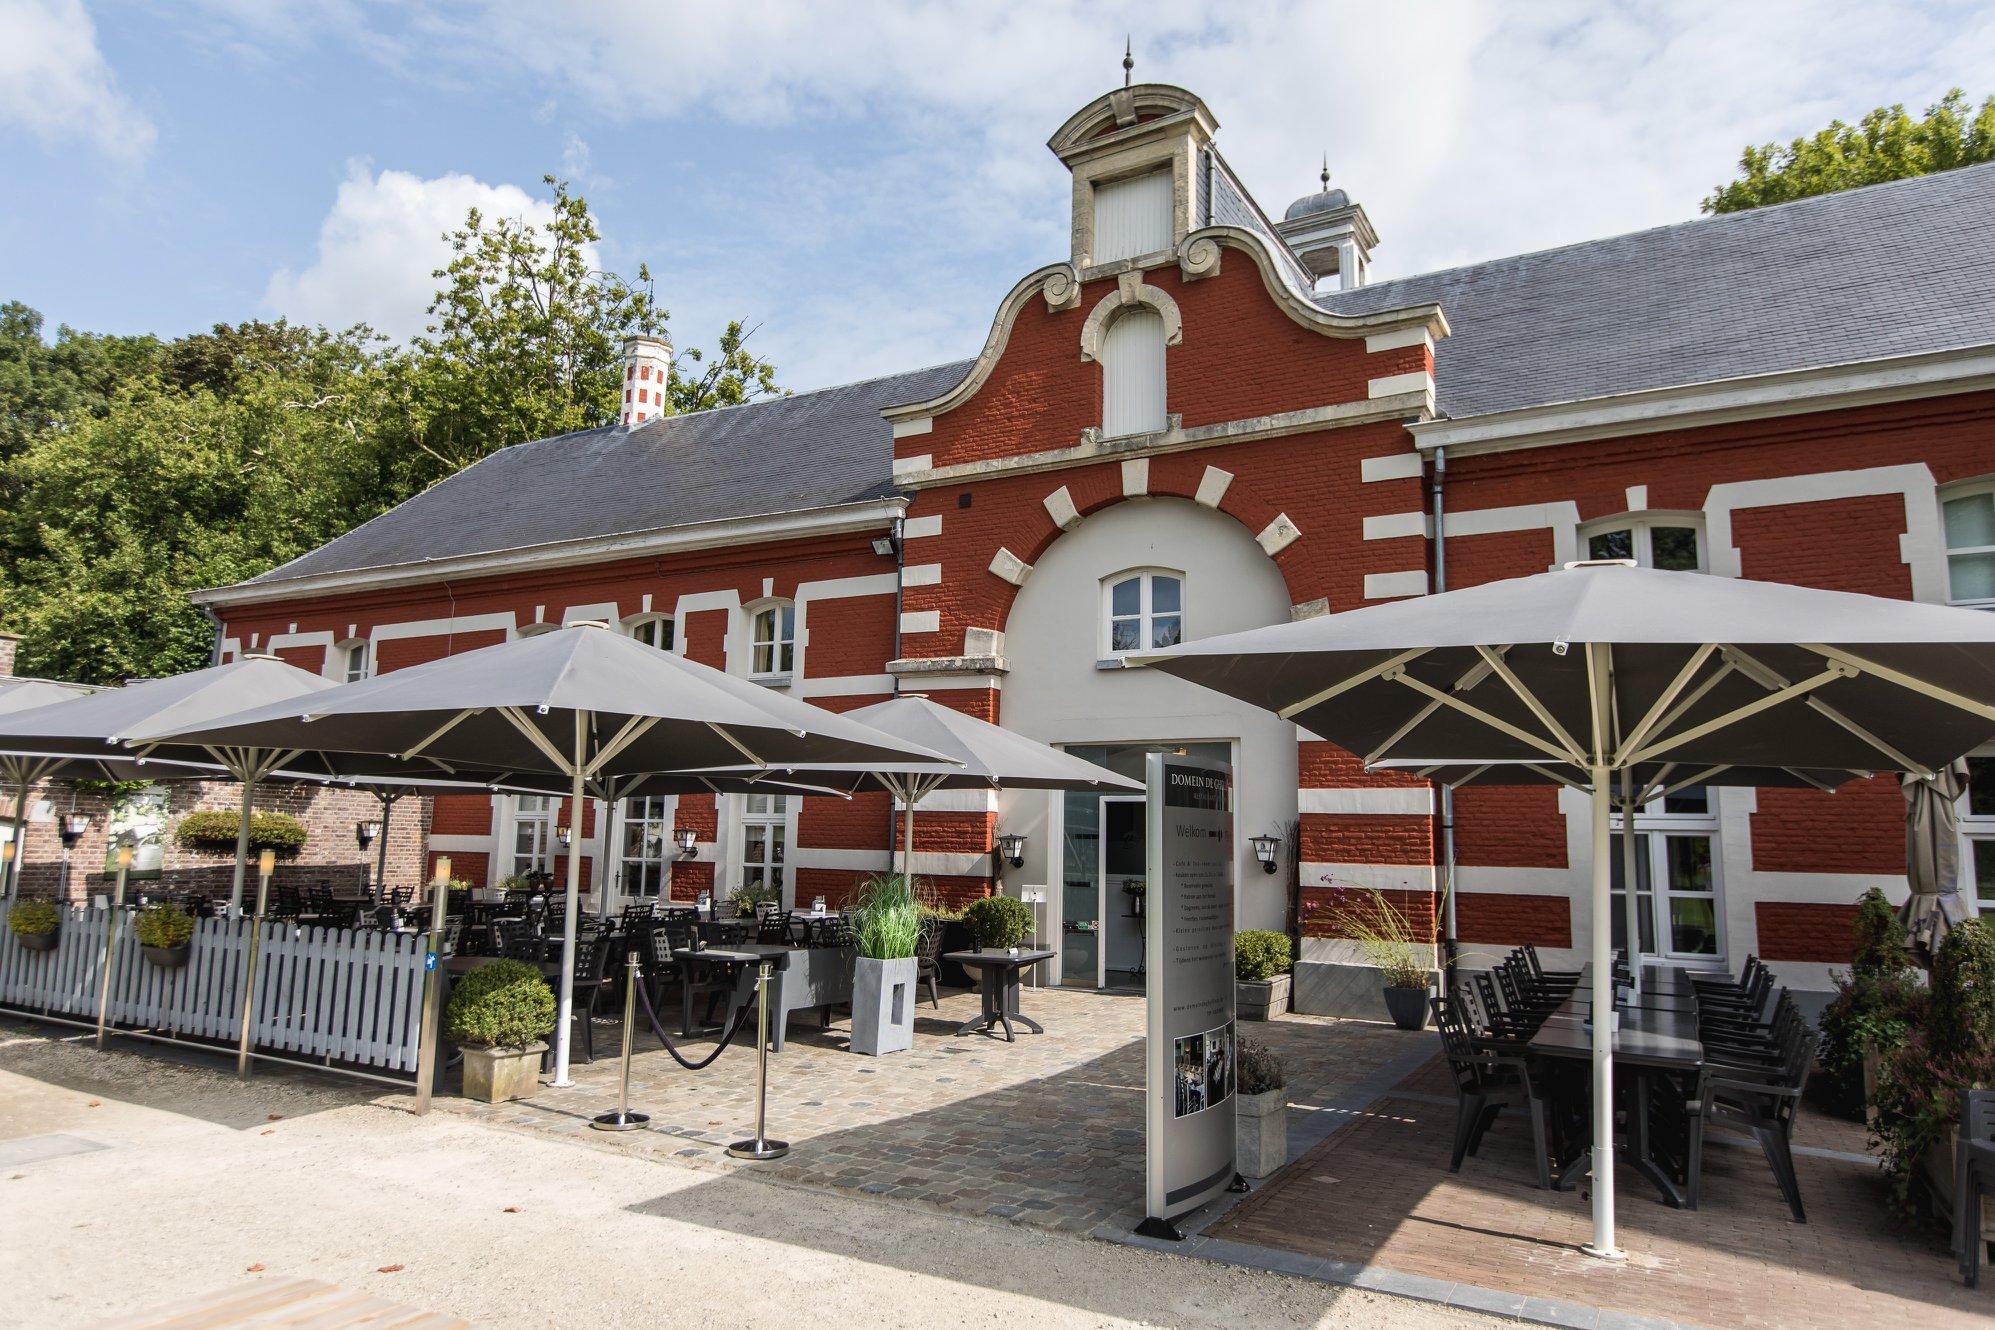 Bezoek ons restaurant en tearoom in Wortegem-Petegem